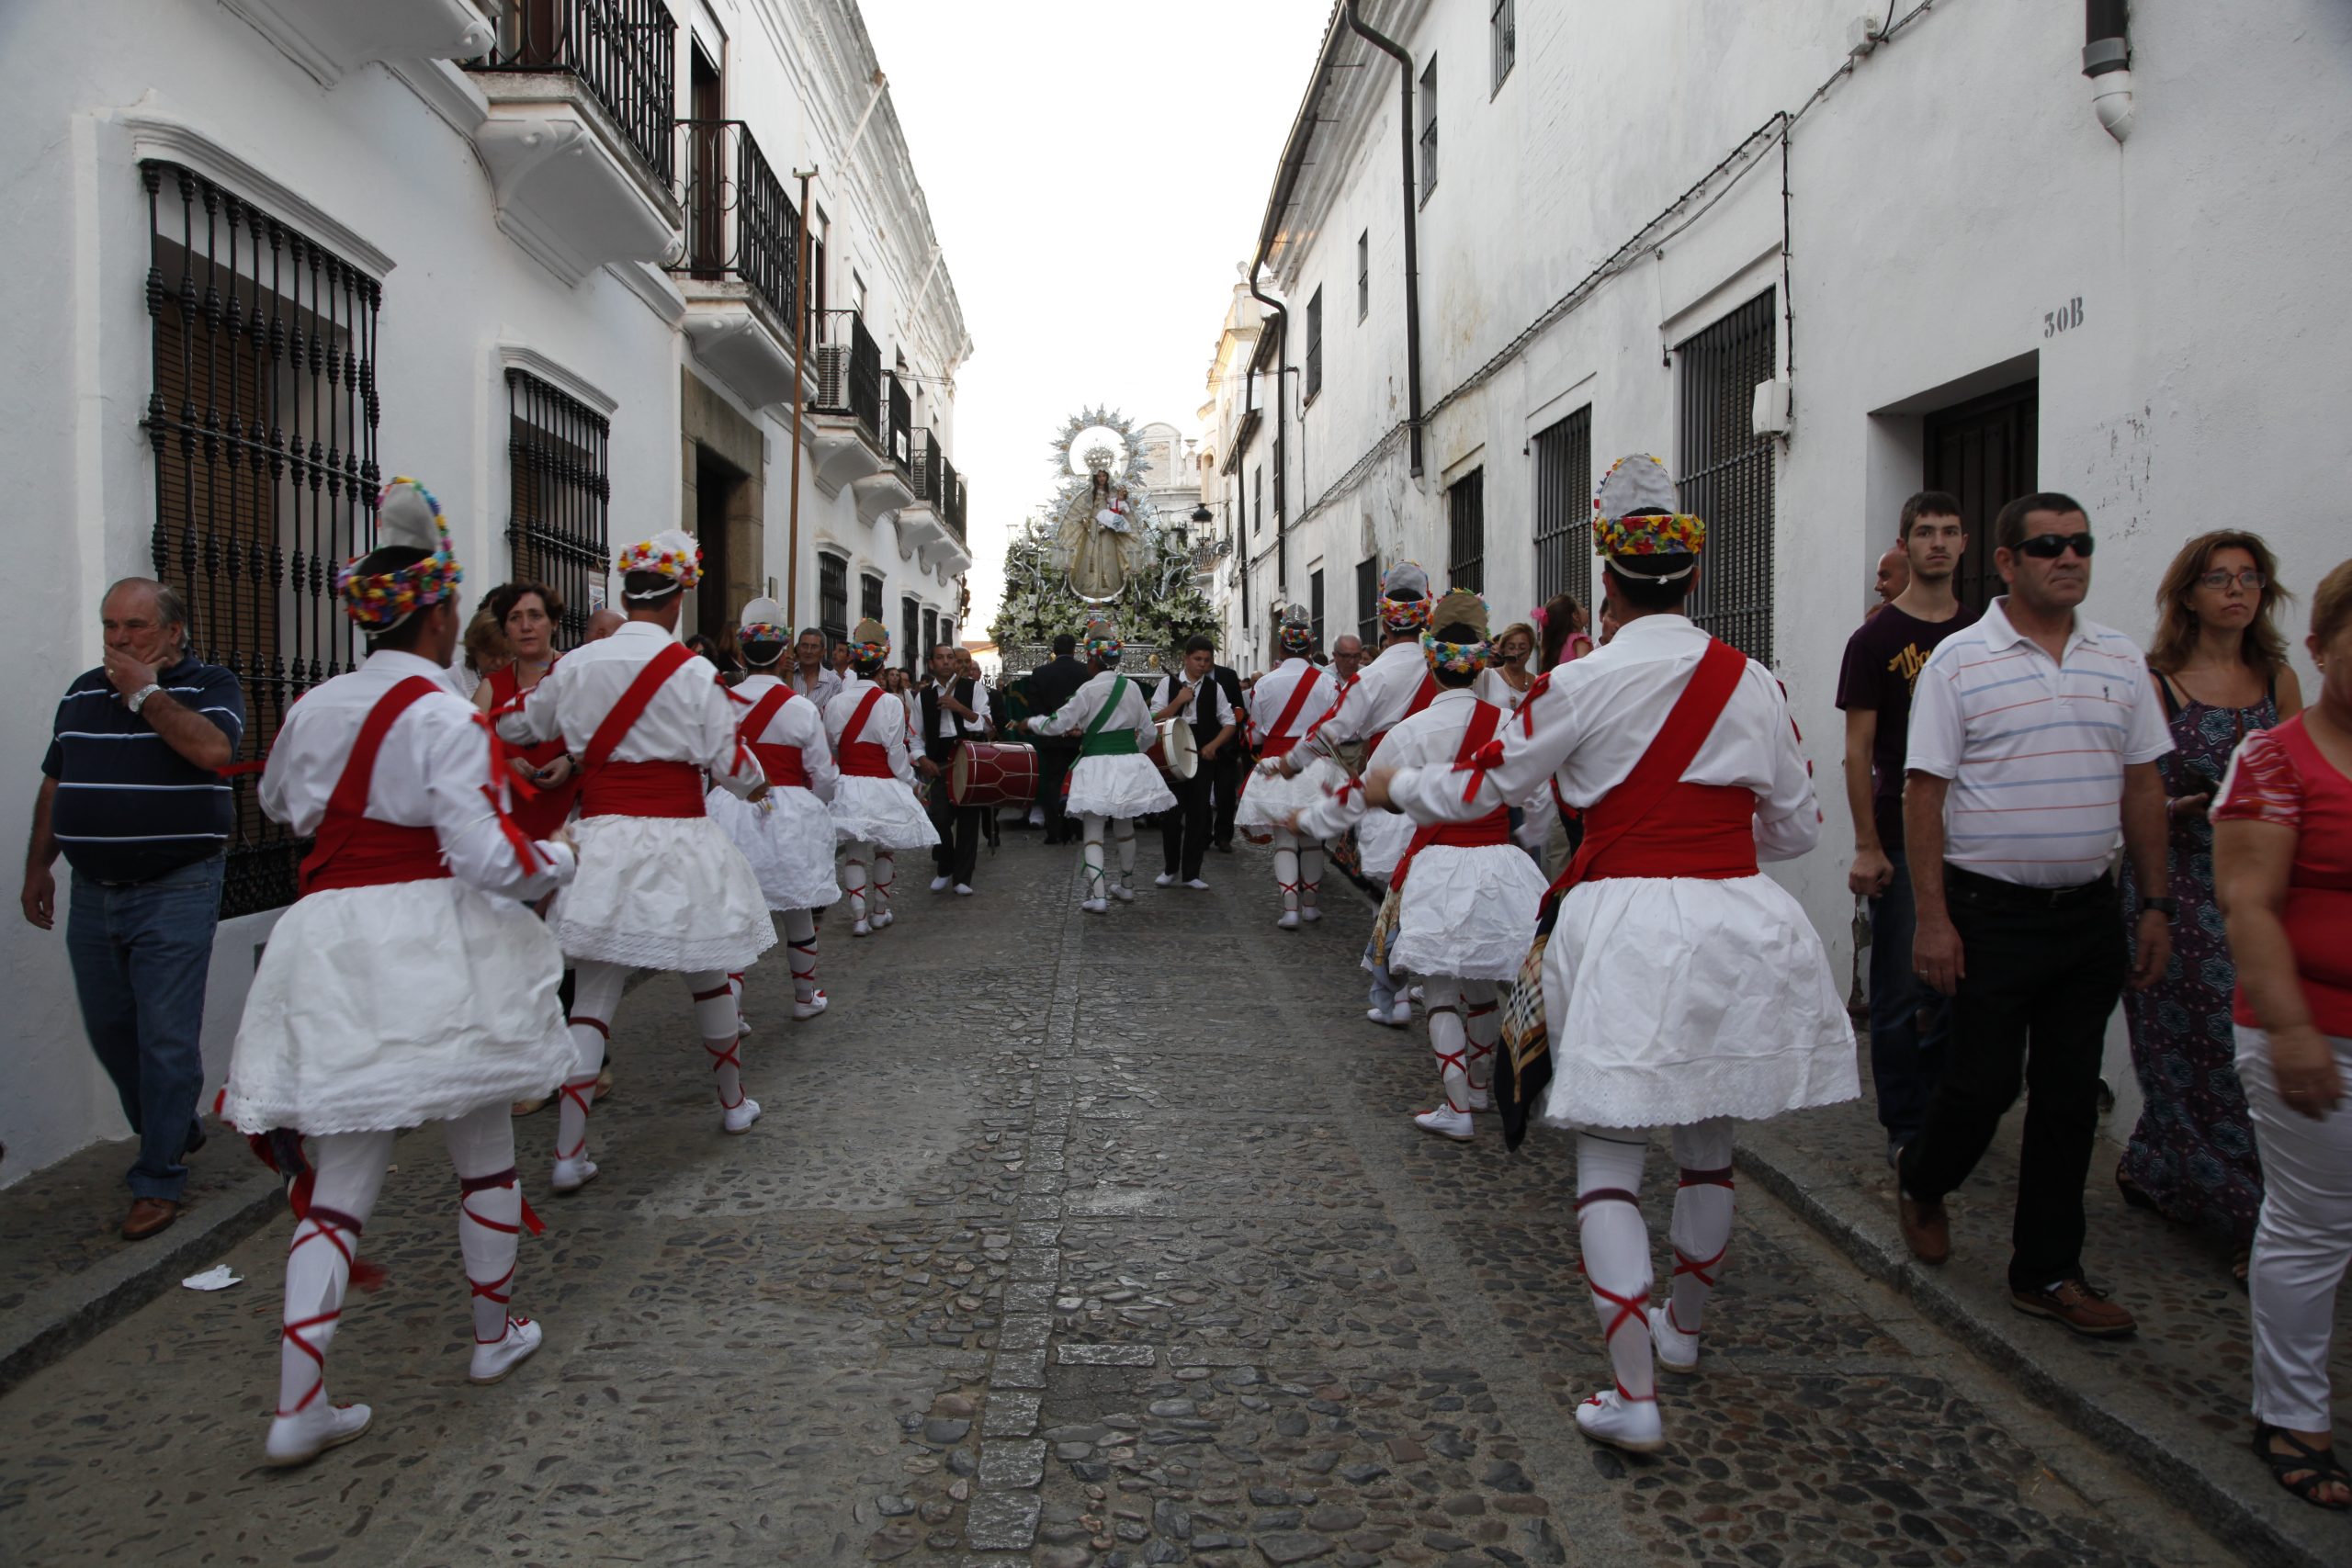 01 Danzantes en la procesión de la Virgen de la Salud. Fregenal de la Sierra. Badajoz